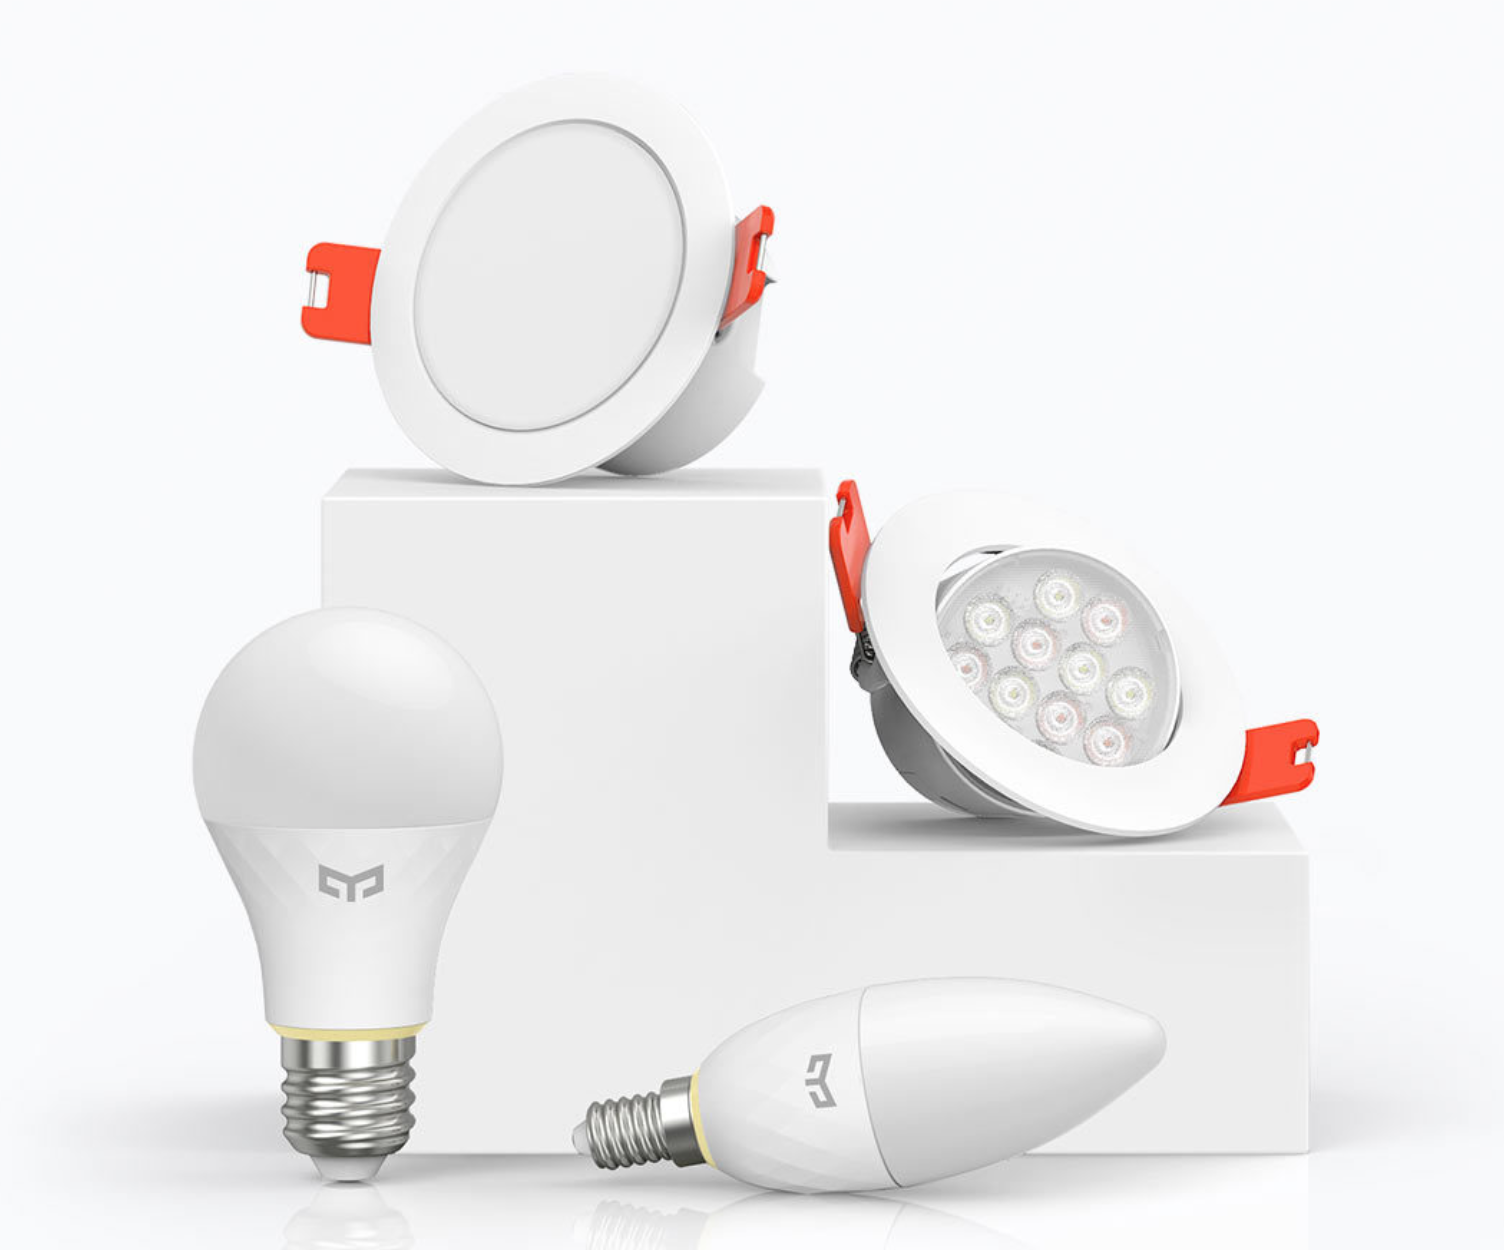 Yeelight Mesh a new set of light bulbs on the Xiaomi offer